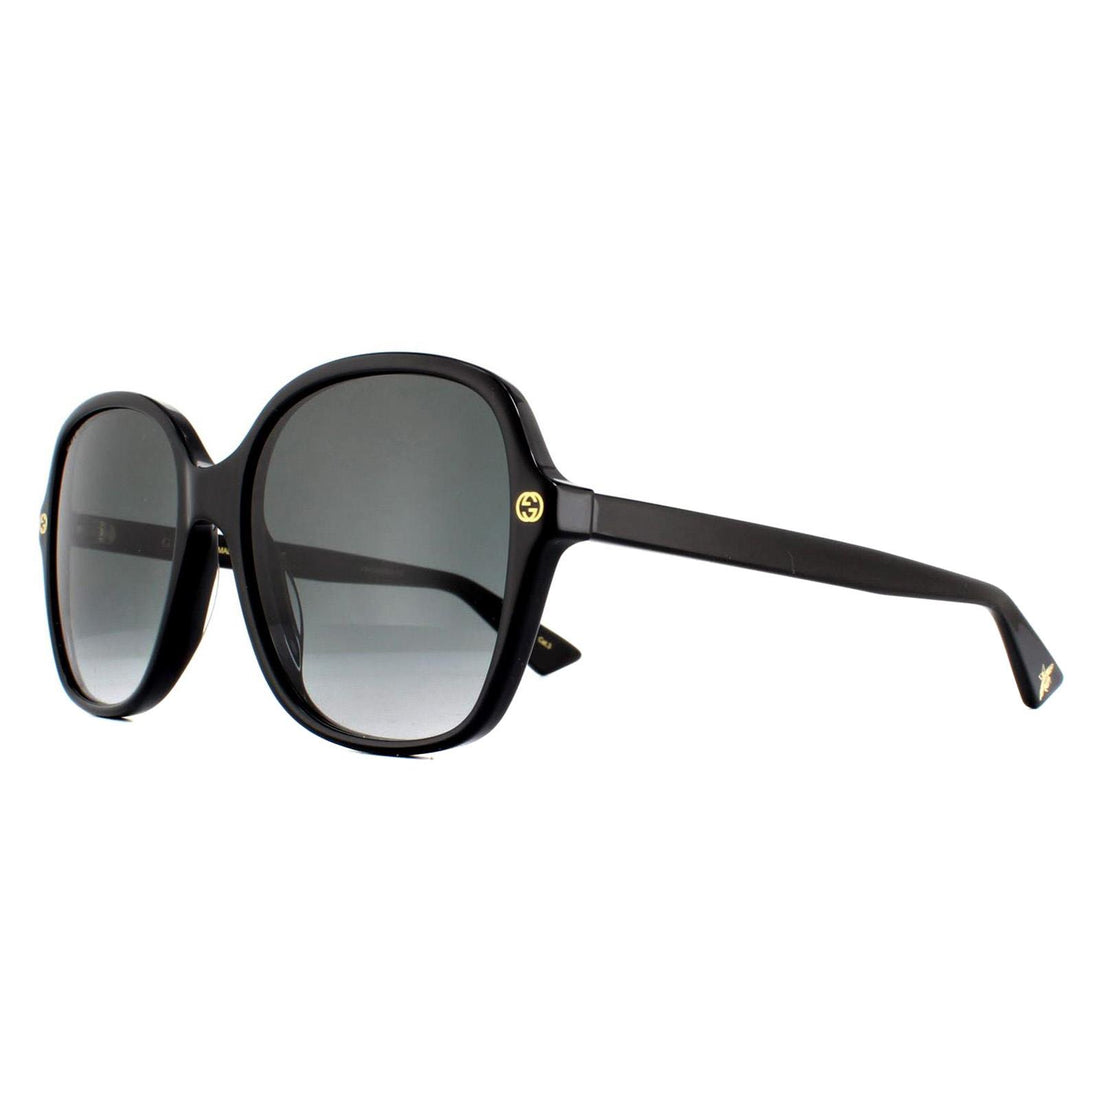 Gucci Sunglasses GG0092S 001 Black Grey Gradient